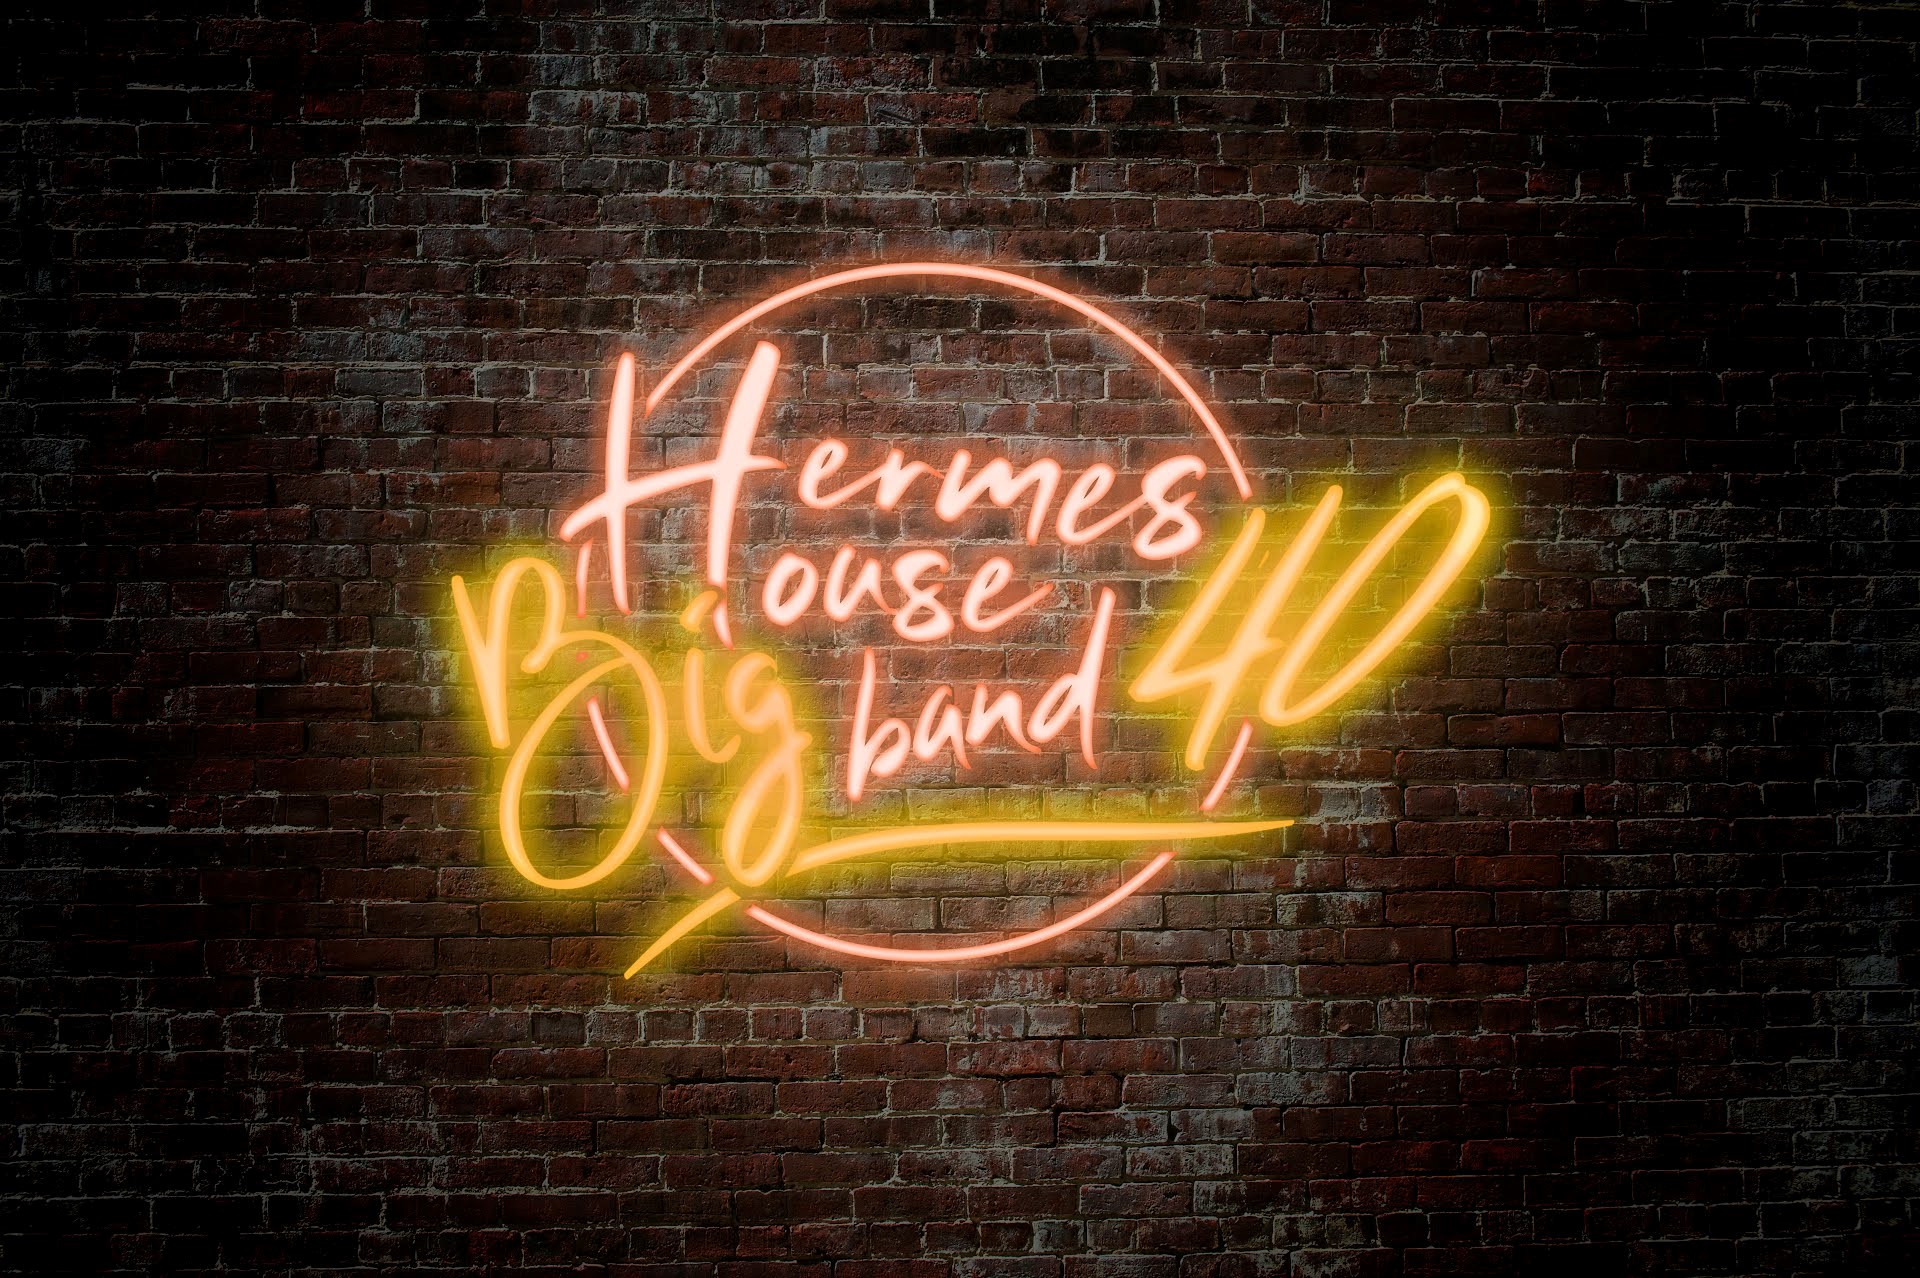 Hermes House BIG Band 40-årsfest på Ahoy Rotterdam